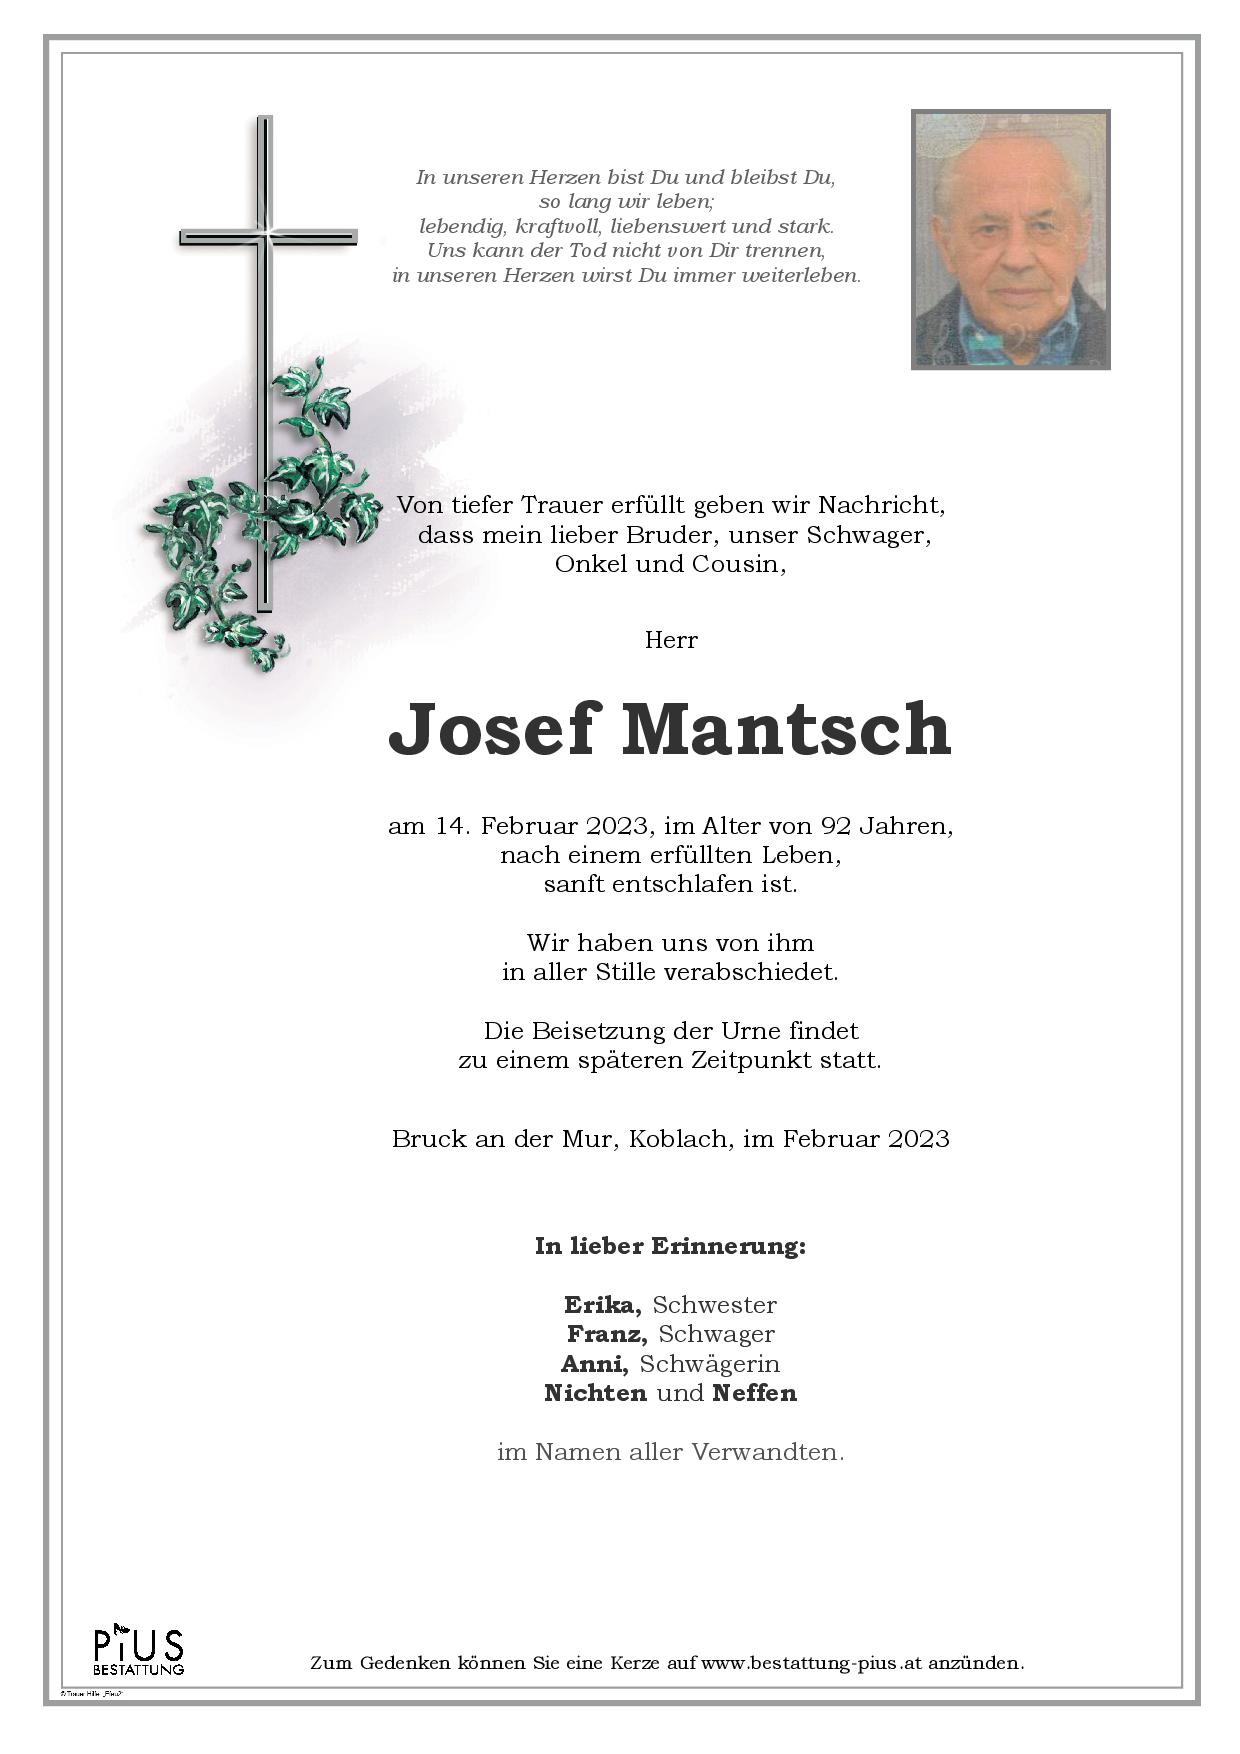 Josef Mantsch